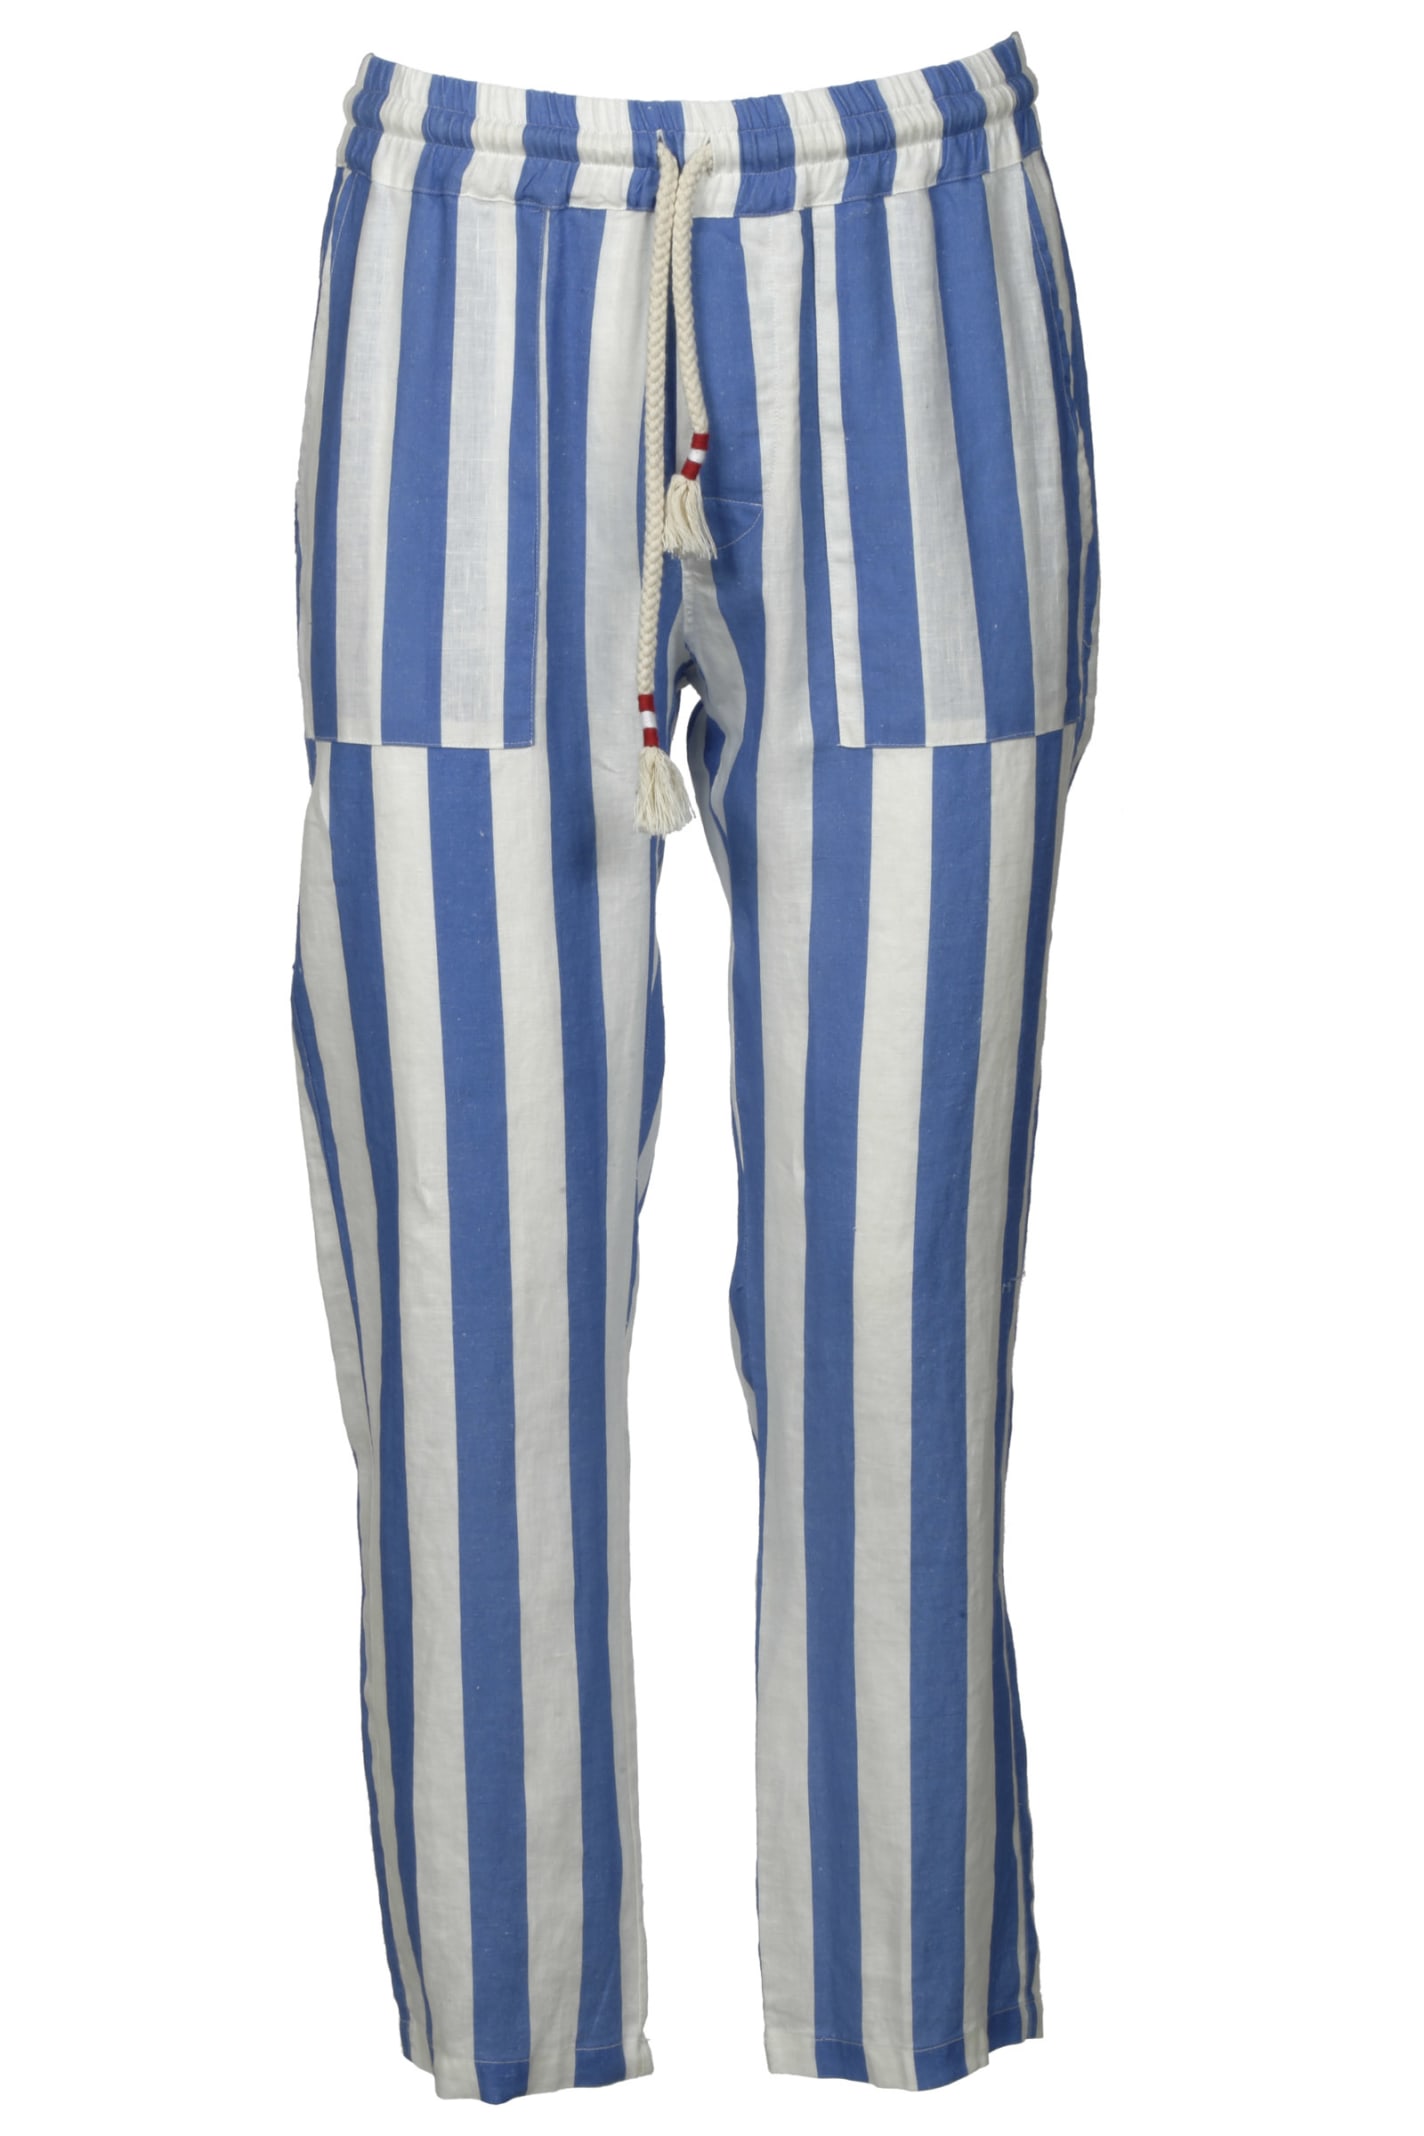 MC2 Saint Barth Calais Stripe Trousers